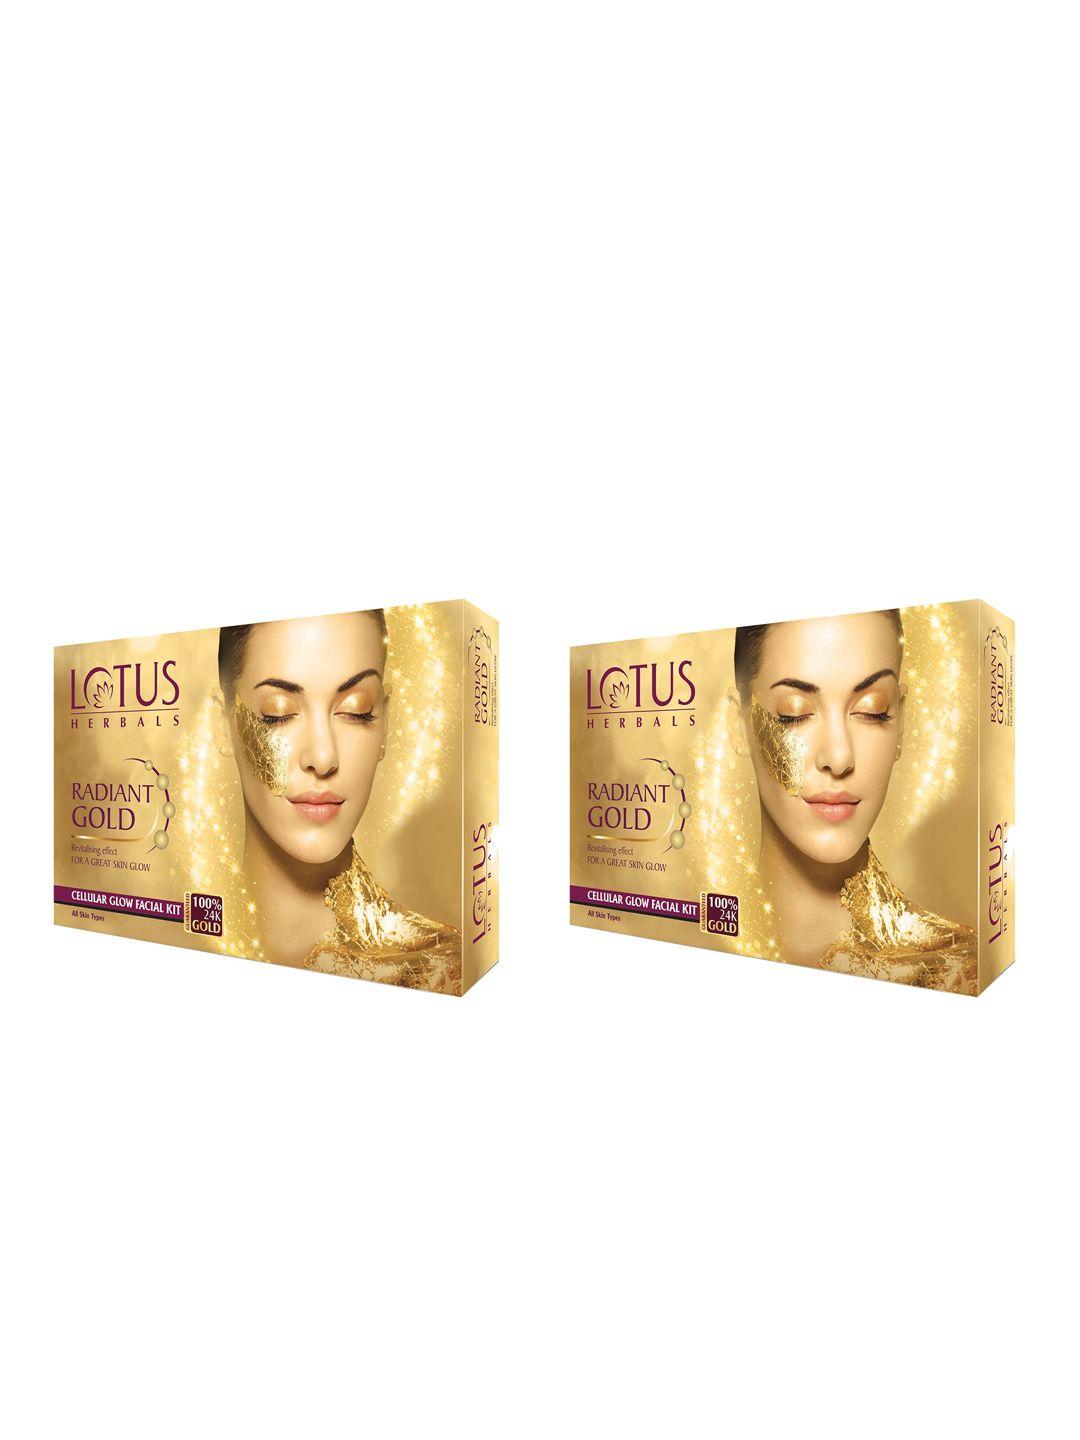 lotus herbals set of 2 radiant gold cellular glow facial kit